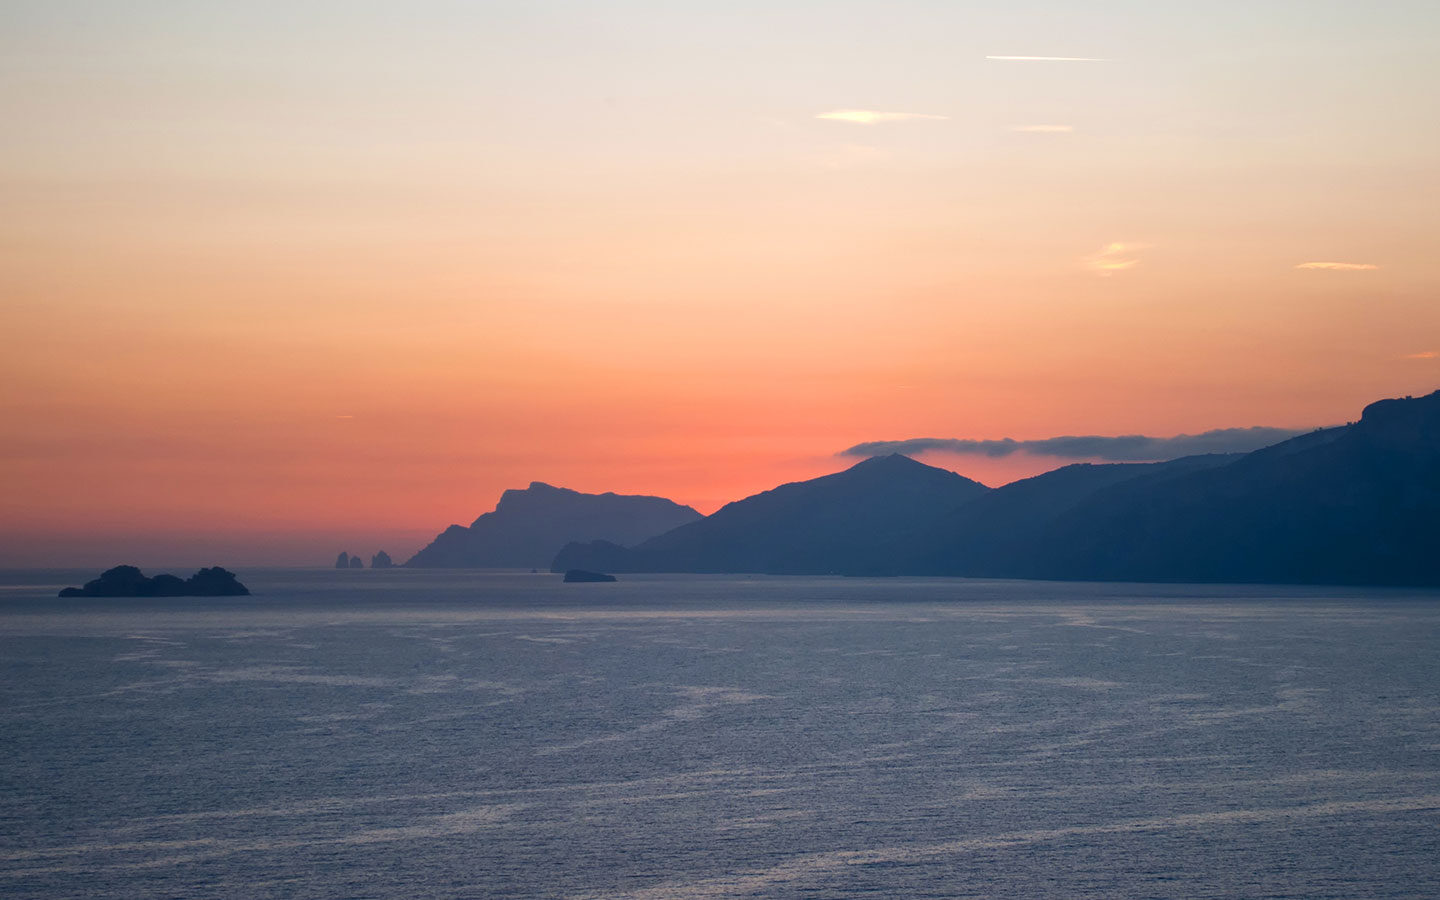 Sunset over the Amalfi Coast